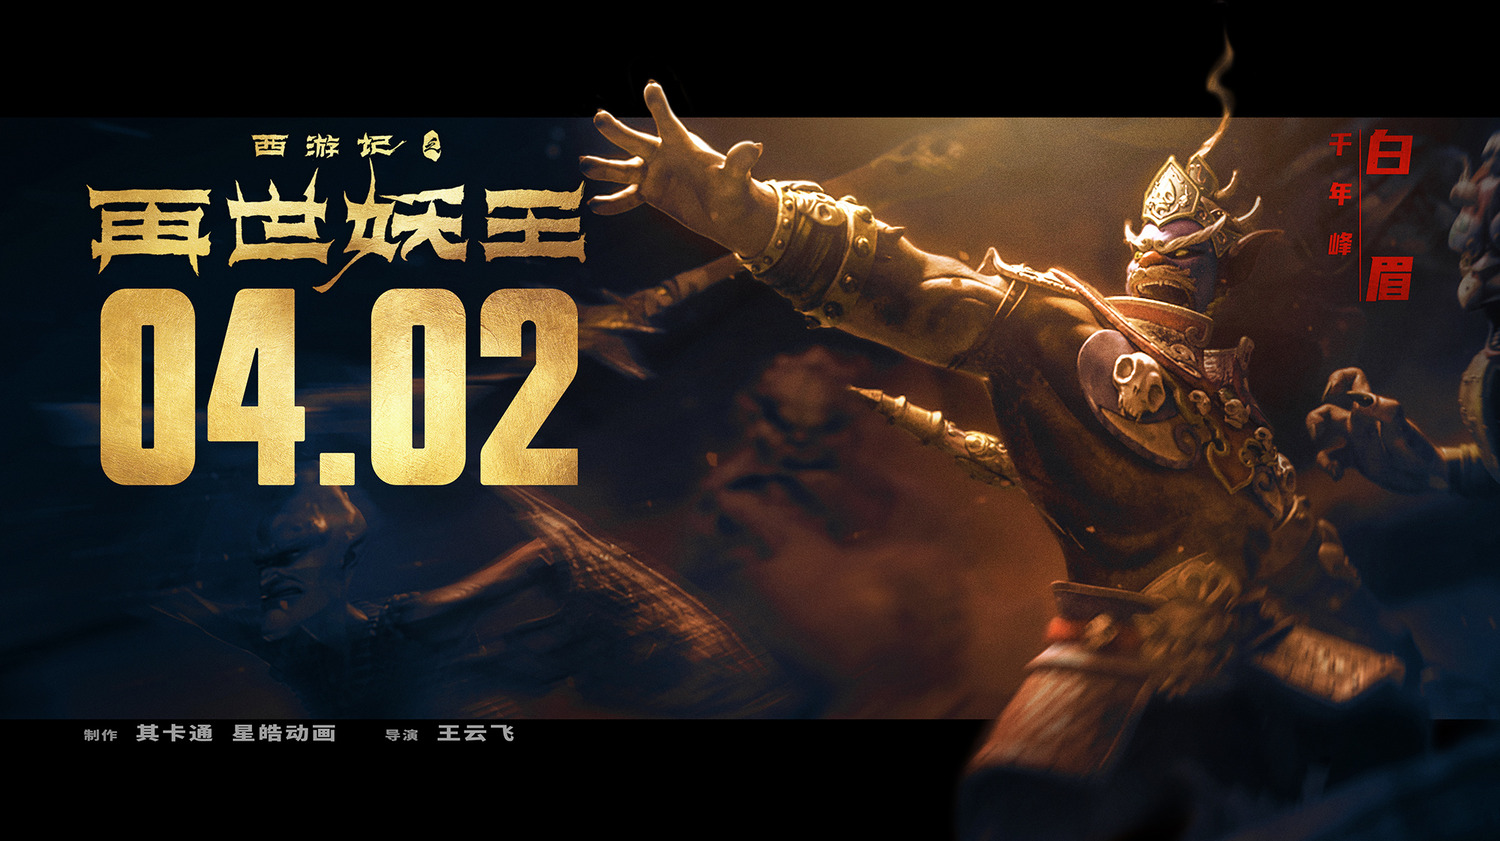 Extra Large Movie Poster Image for Xi You Ji Zhi Zai Shi Yao Wang (#9 of 21)